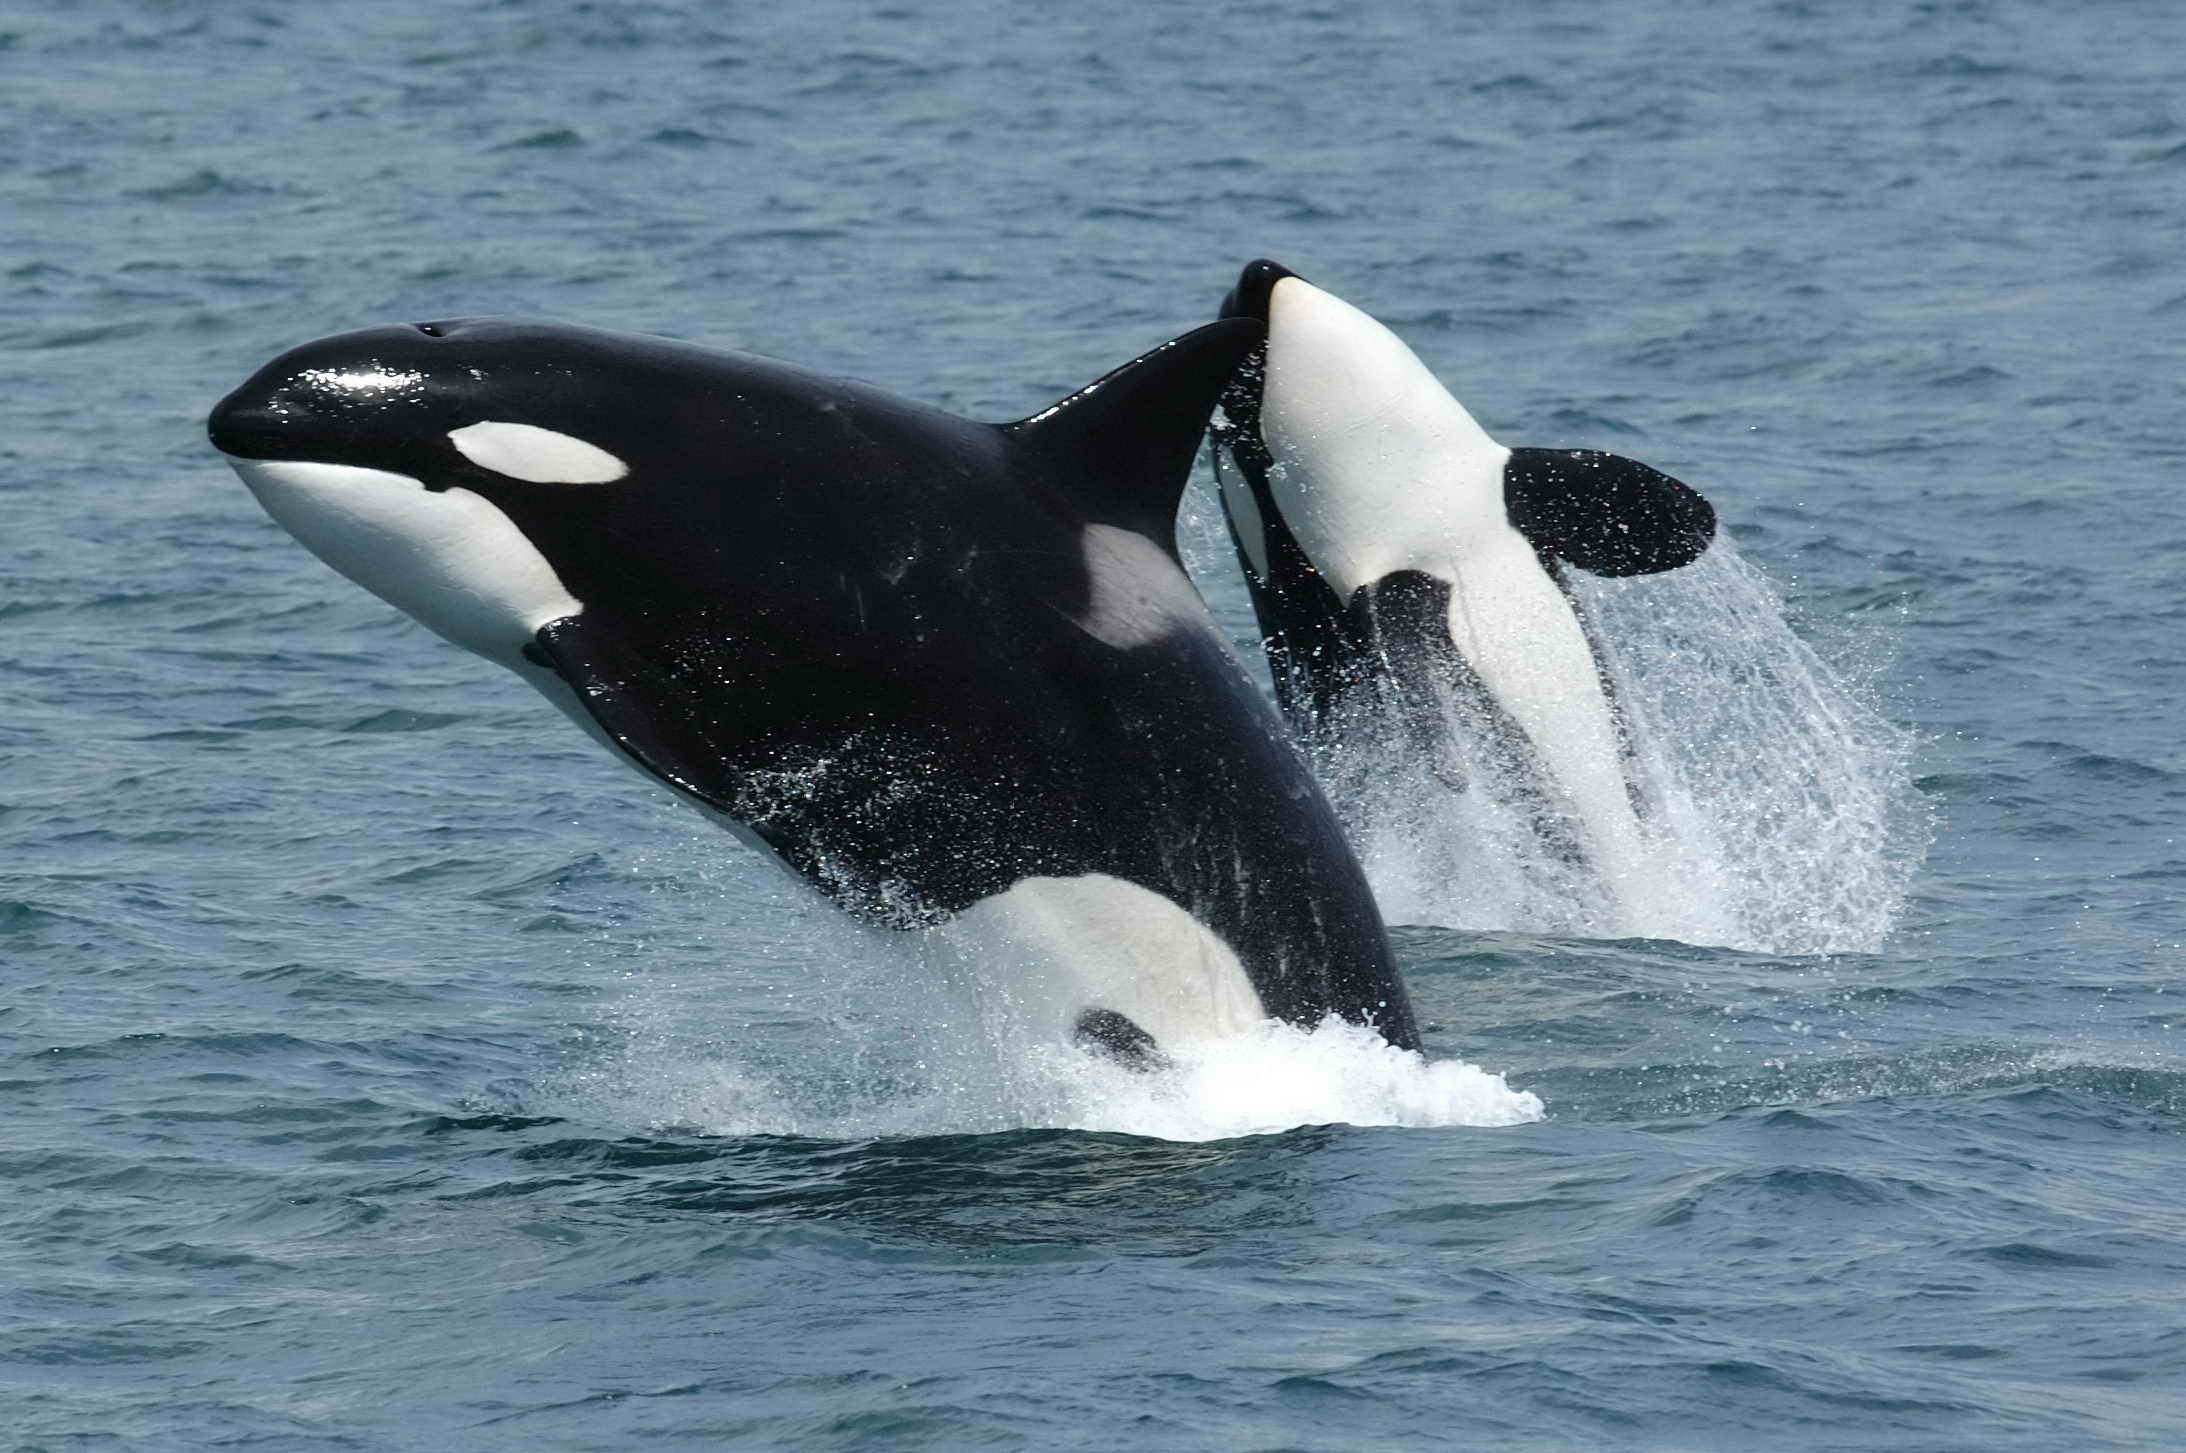 범고래는 바다 깊숙이 잠수하는 혹등고래 등과는 달리 한 번 잠수해 버틸 수 있는 시간은 1분 미만으로 확인됐다. 위키피디아 제공